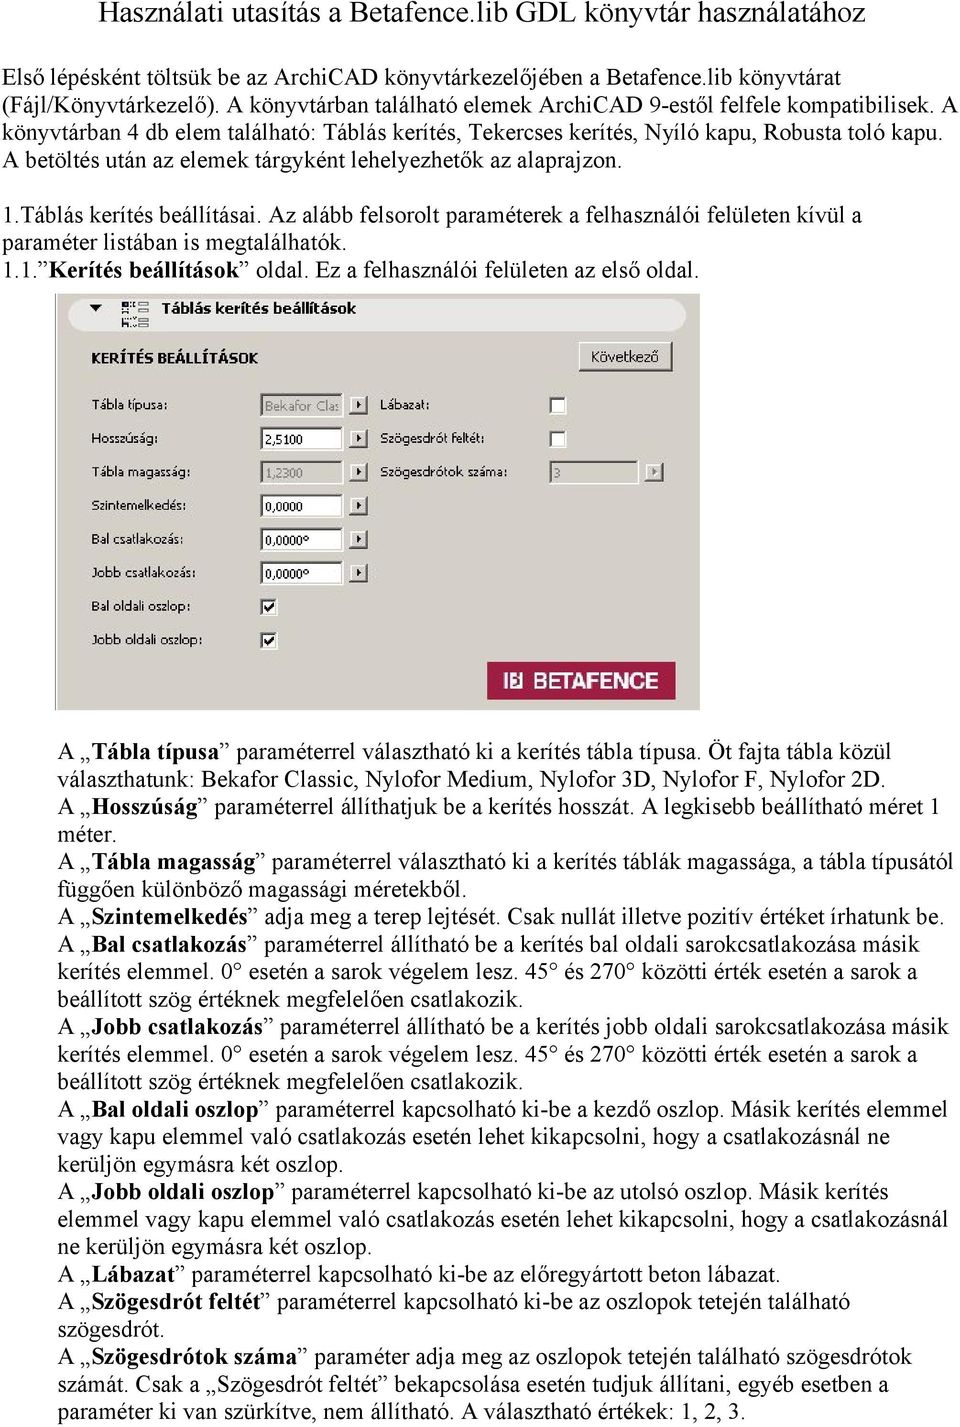 Használati utasítás a Betafence.lib GDL könyvtár használatához - PDF Free  Download